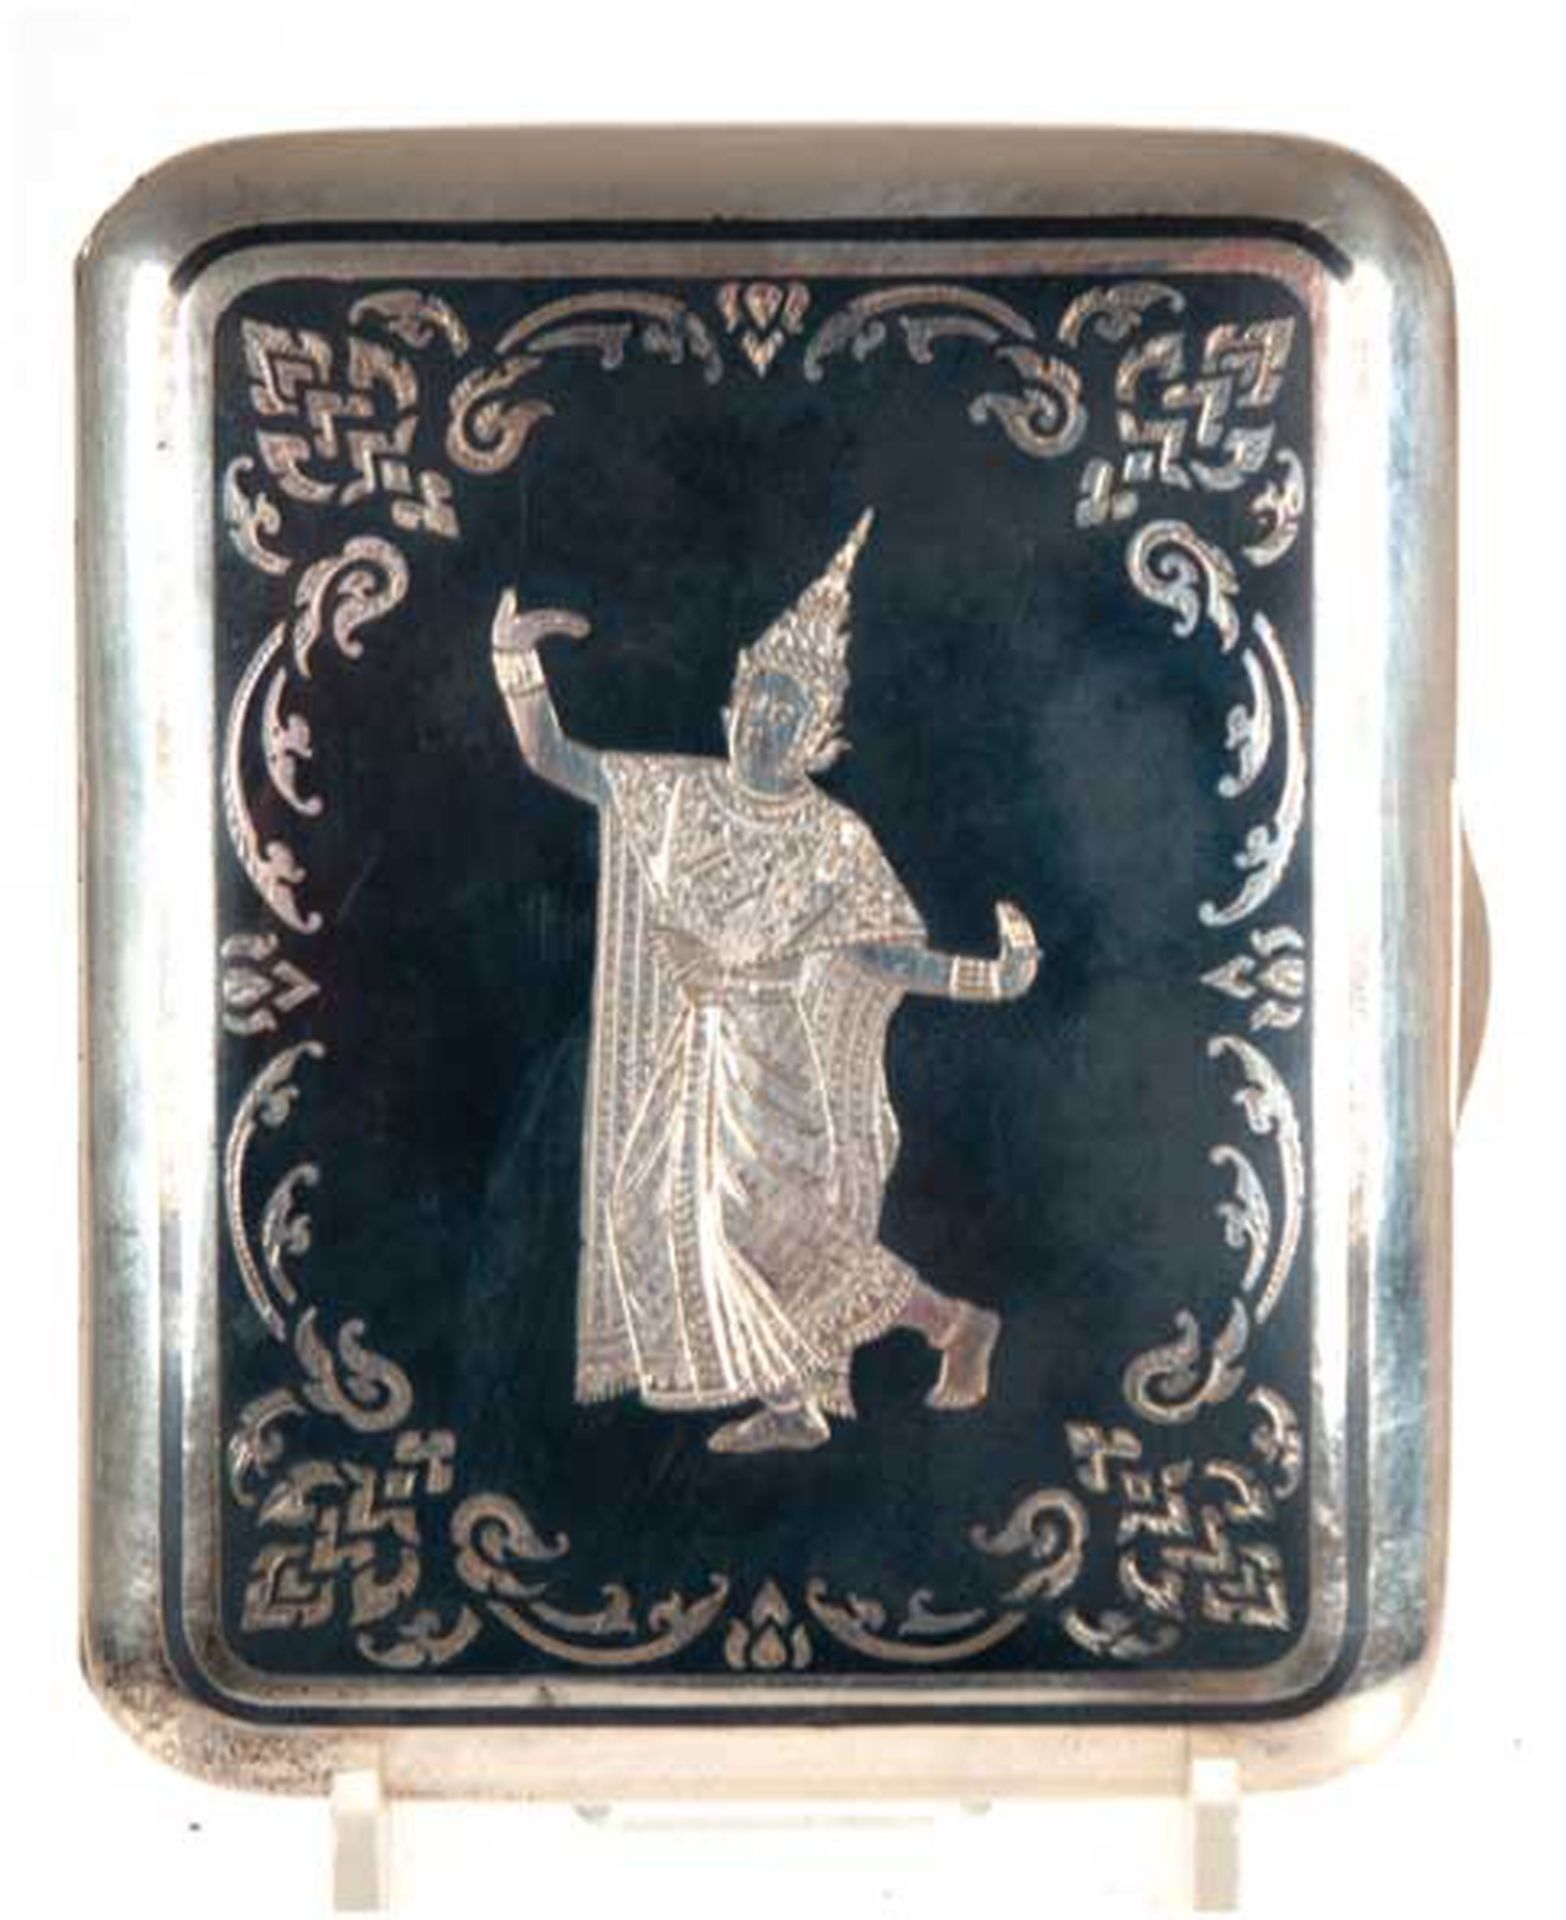 Zigarettenetui, 925er Silber innen vergoldet, 120 g, Deckel mit Niellodekor, Darstellung einer asia